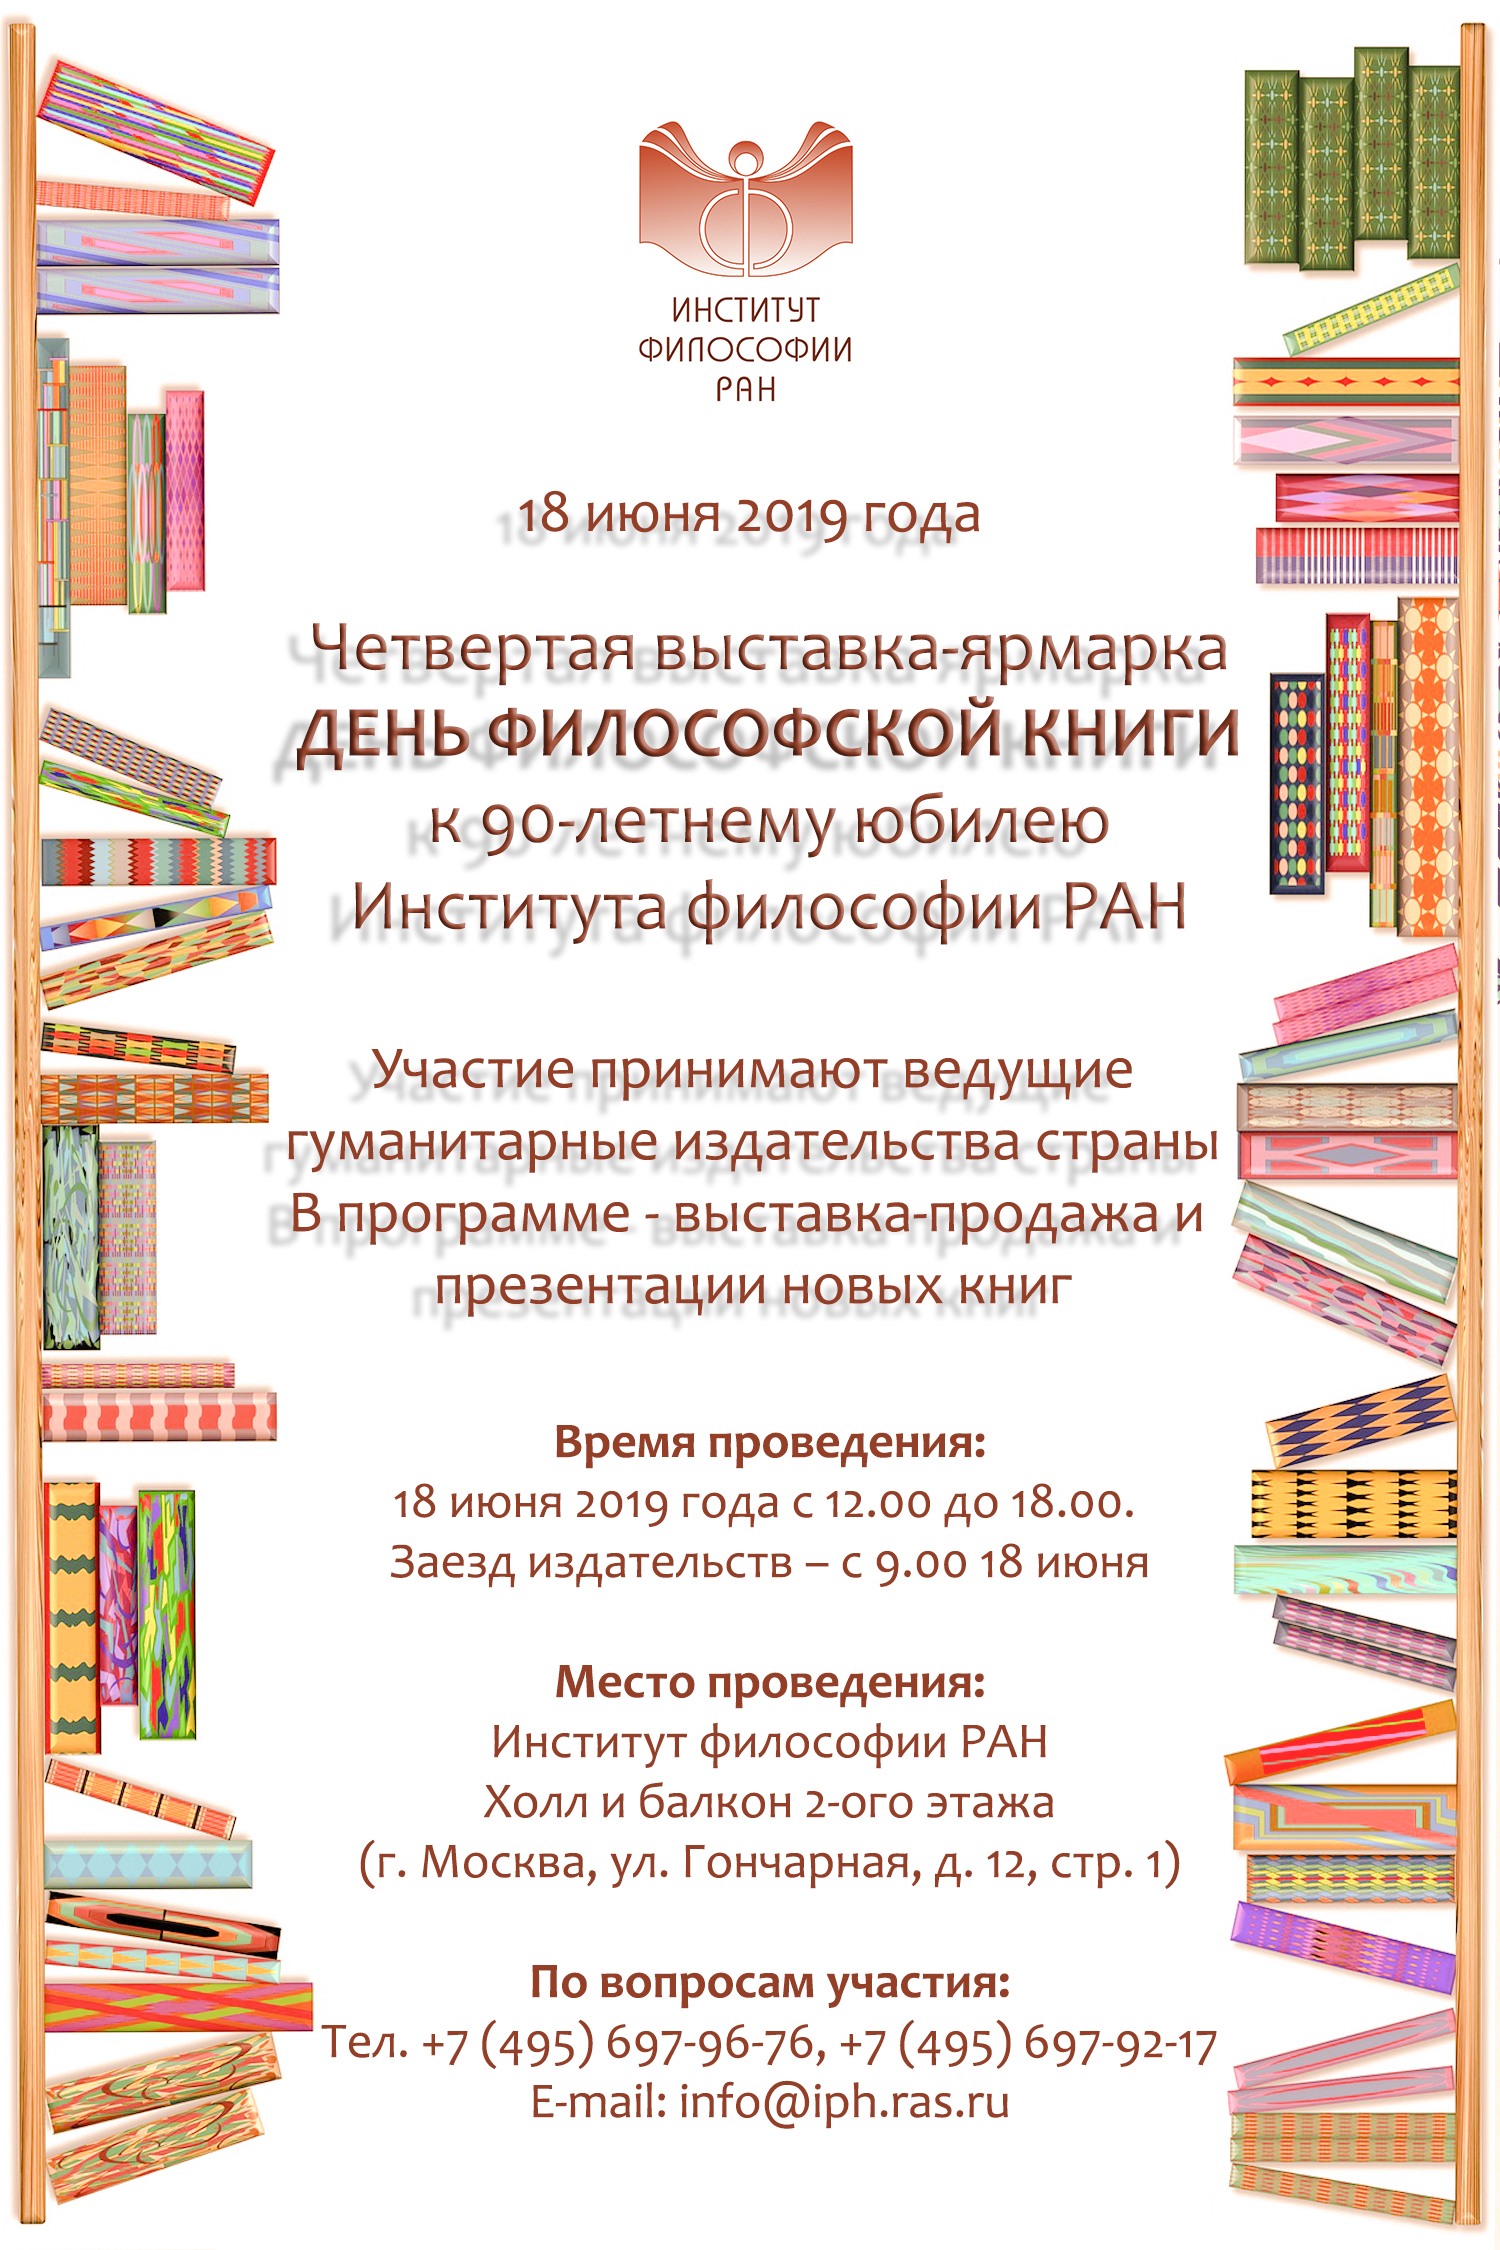 Четвертая выставка-ярмарка «День философской книги», 18 июня 2019 г.